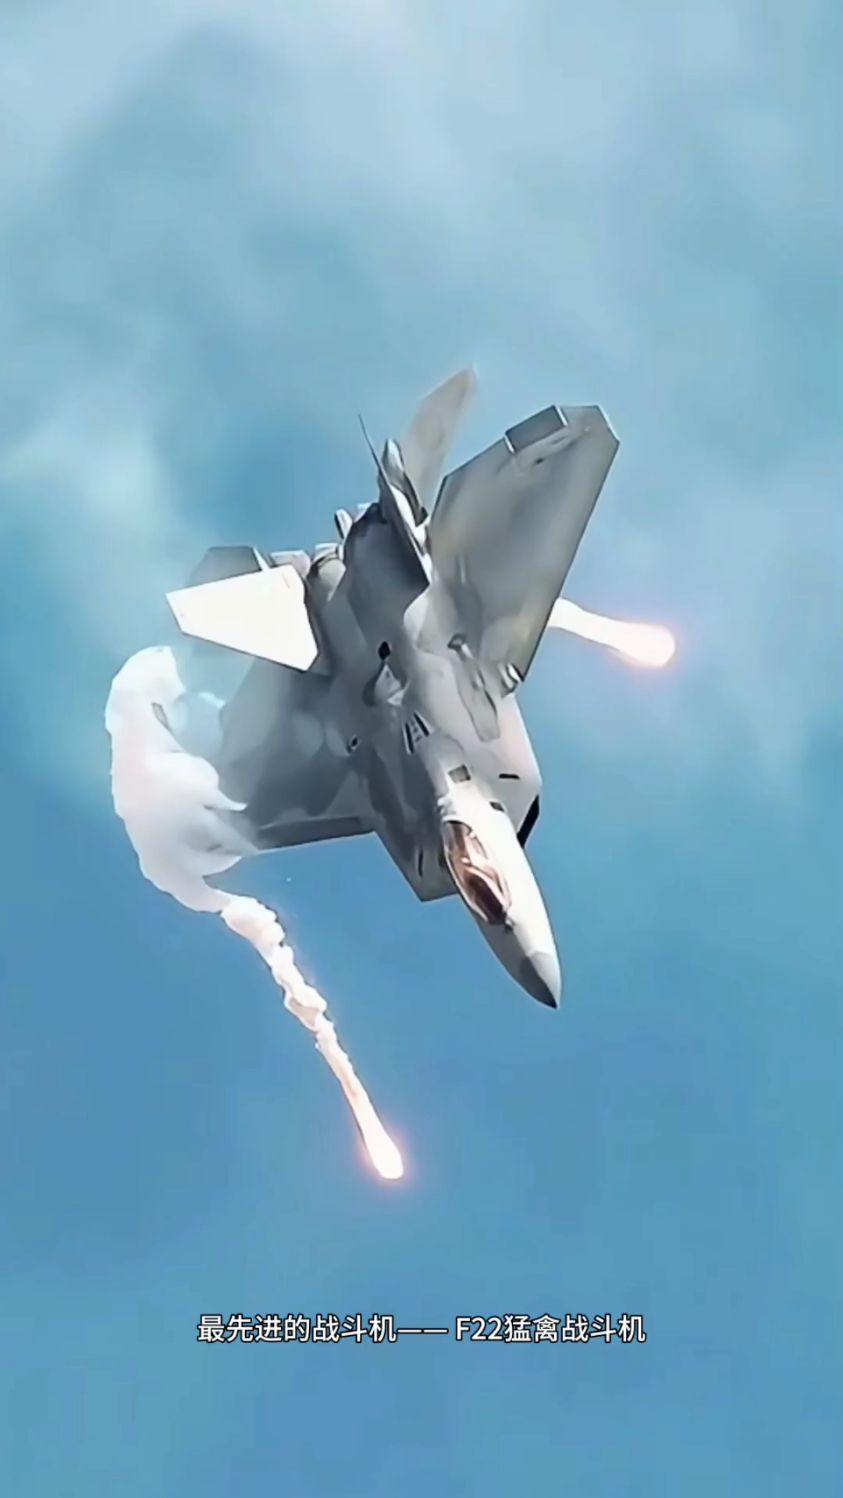 猛禽f22战斗机的空中表演